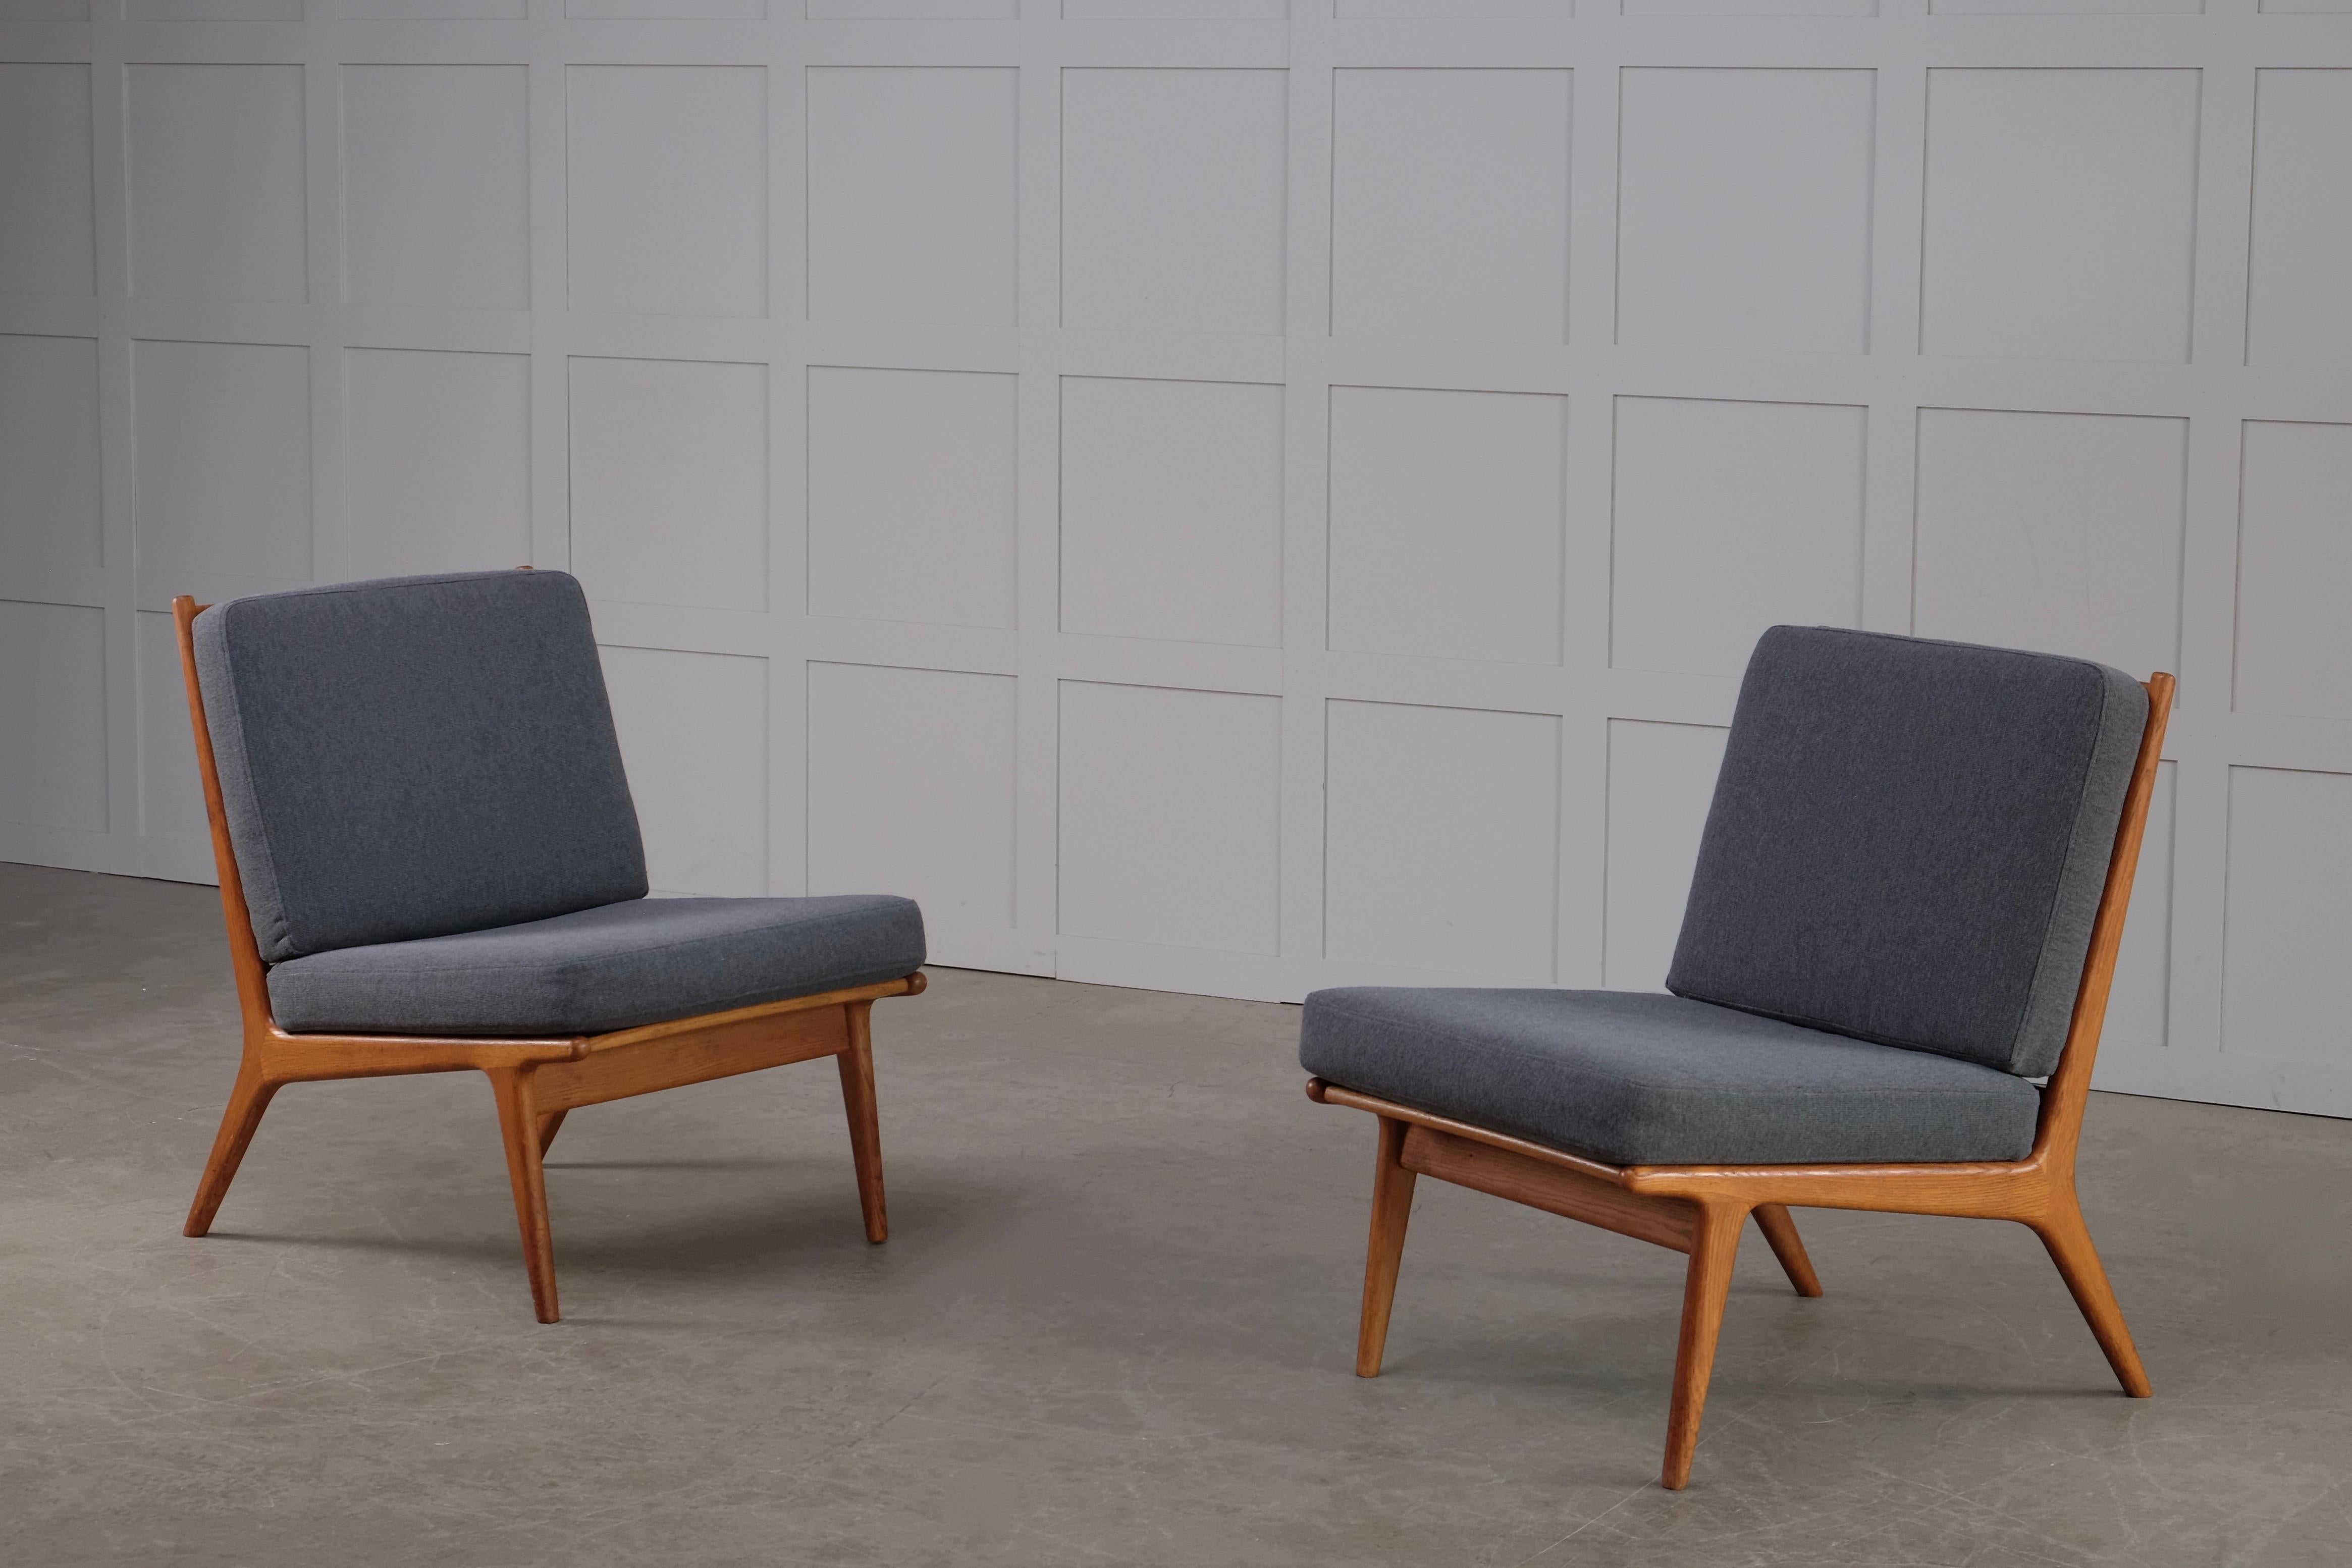 Modèle rare. Conçu par Karl-Erik Ekselius, produit par JOC à Vetlanda, Suède, années 1960.
Cadre en chêne massif et coussins nouvellement rembourrés en tissu de laine.
Jeu de 5 chaises disponible. Le prix indiqué est pour une paire.
  